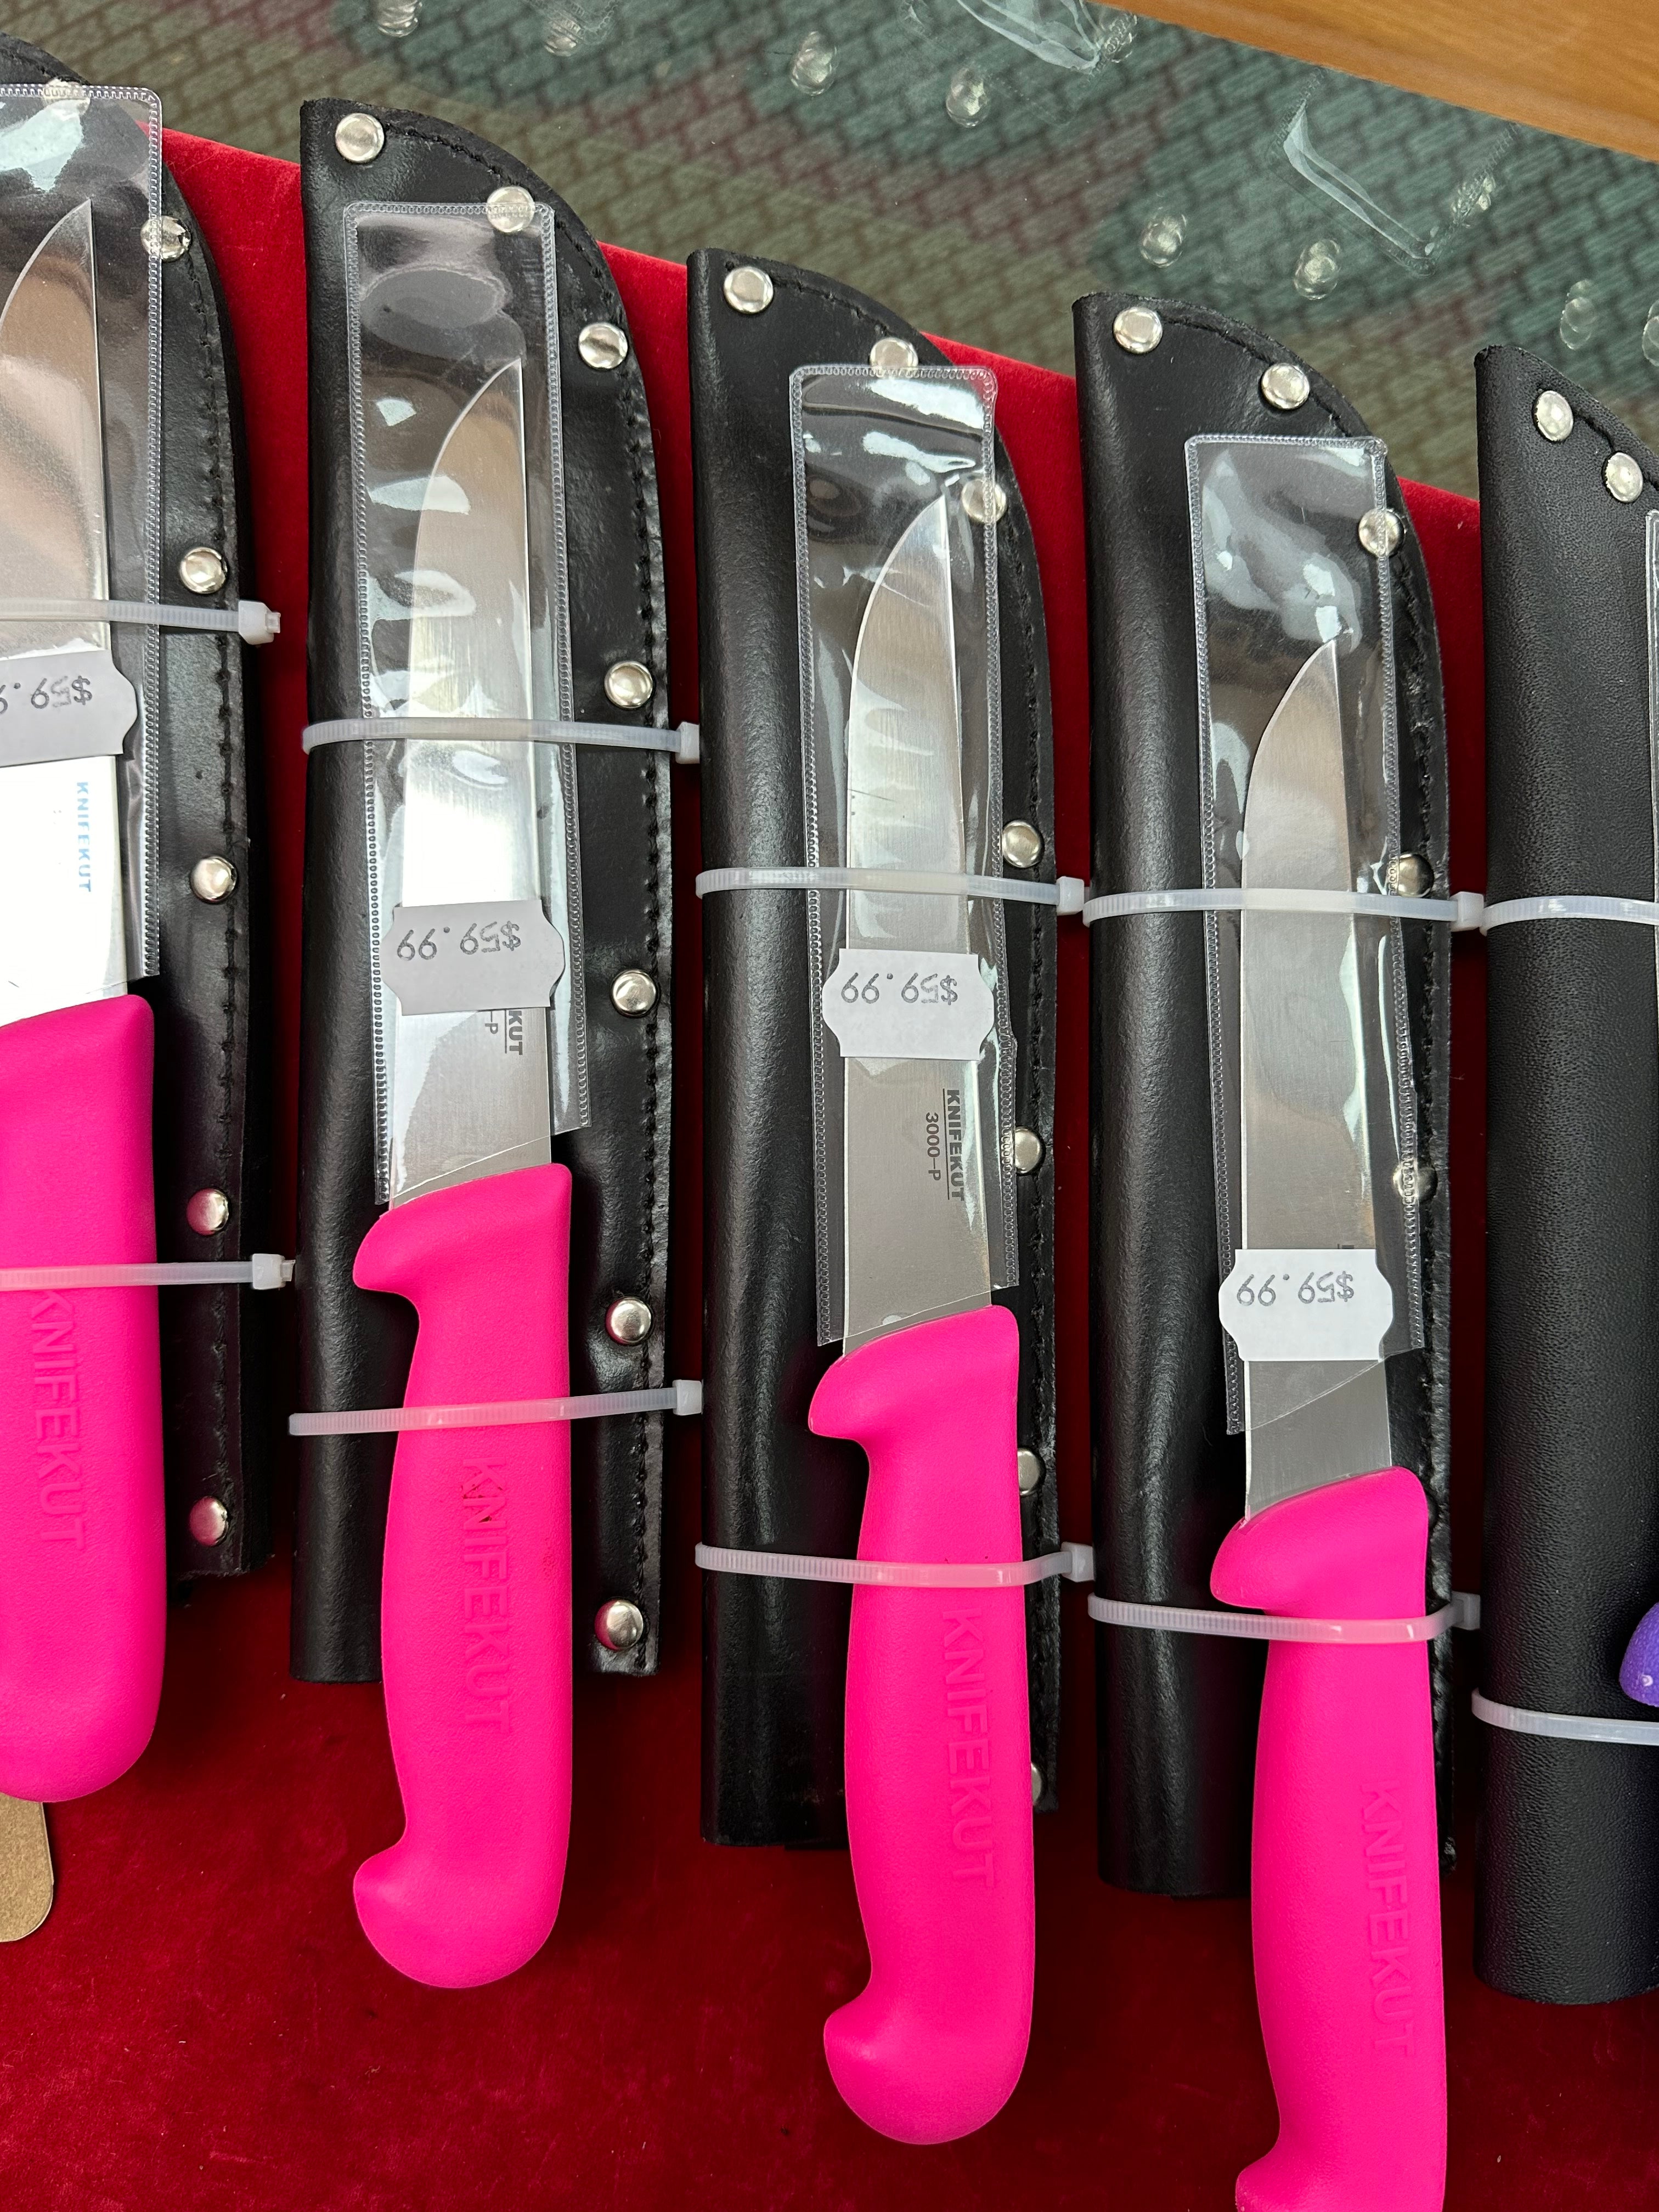 Knifekut 15cm Boning Knife (Pink) - 3000-P - Sportinglife Turangi 